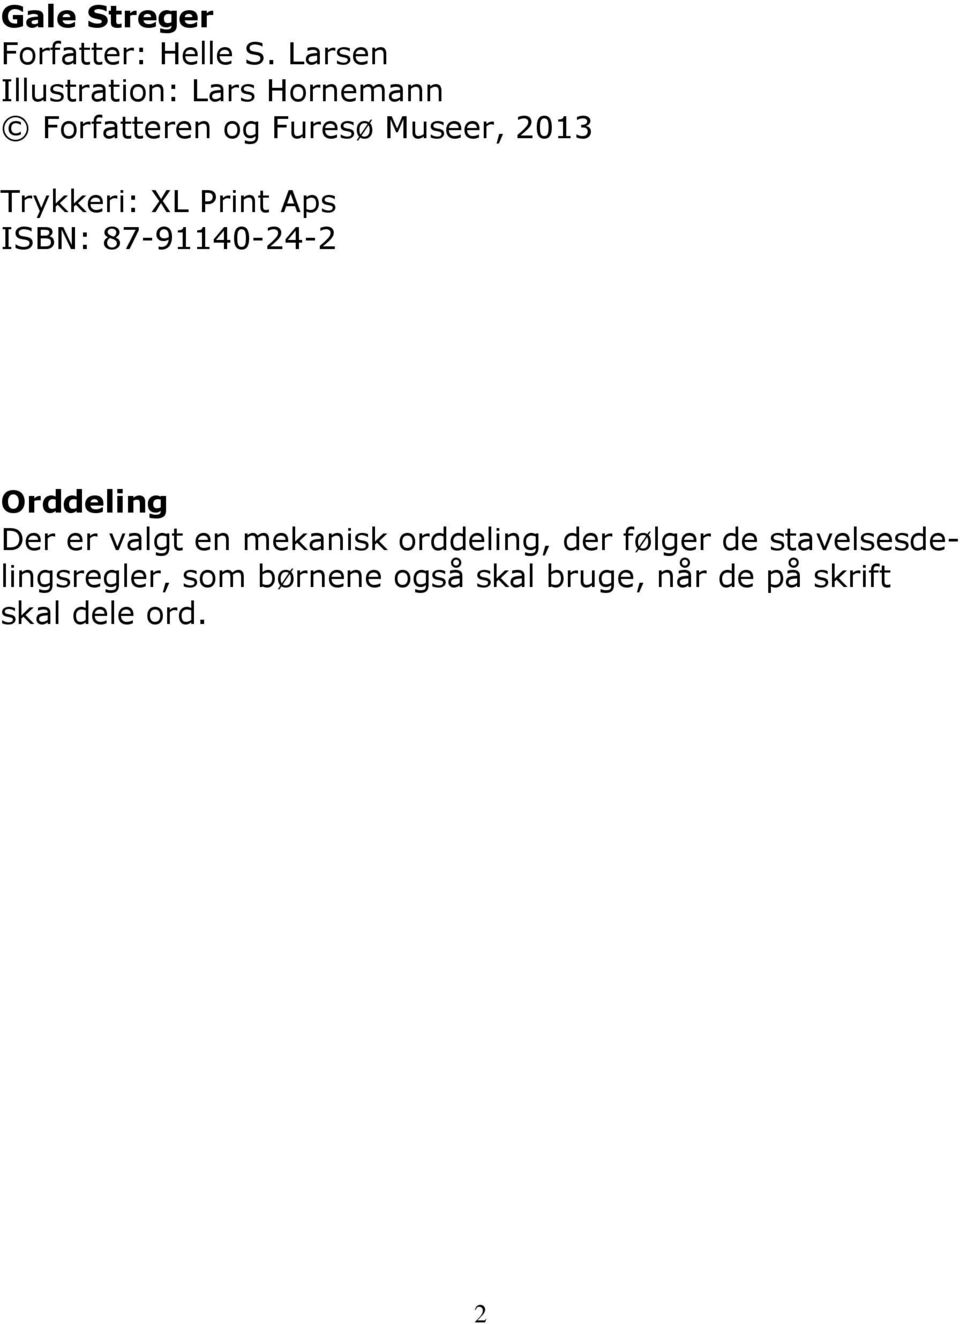 Trykkeri: XL Print Aps ISBN: 87-91140-24-2 Orddeling Der er valgt en